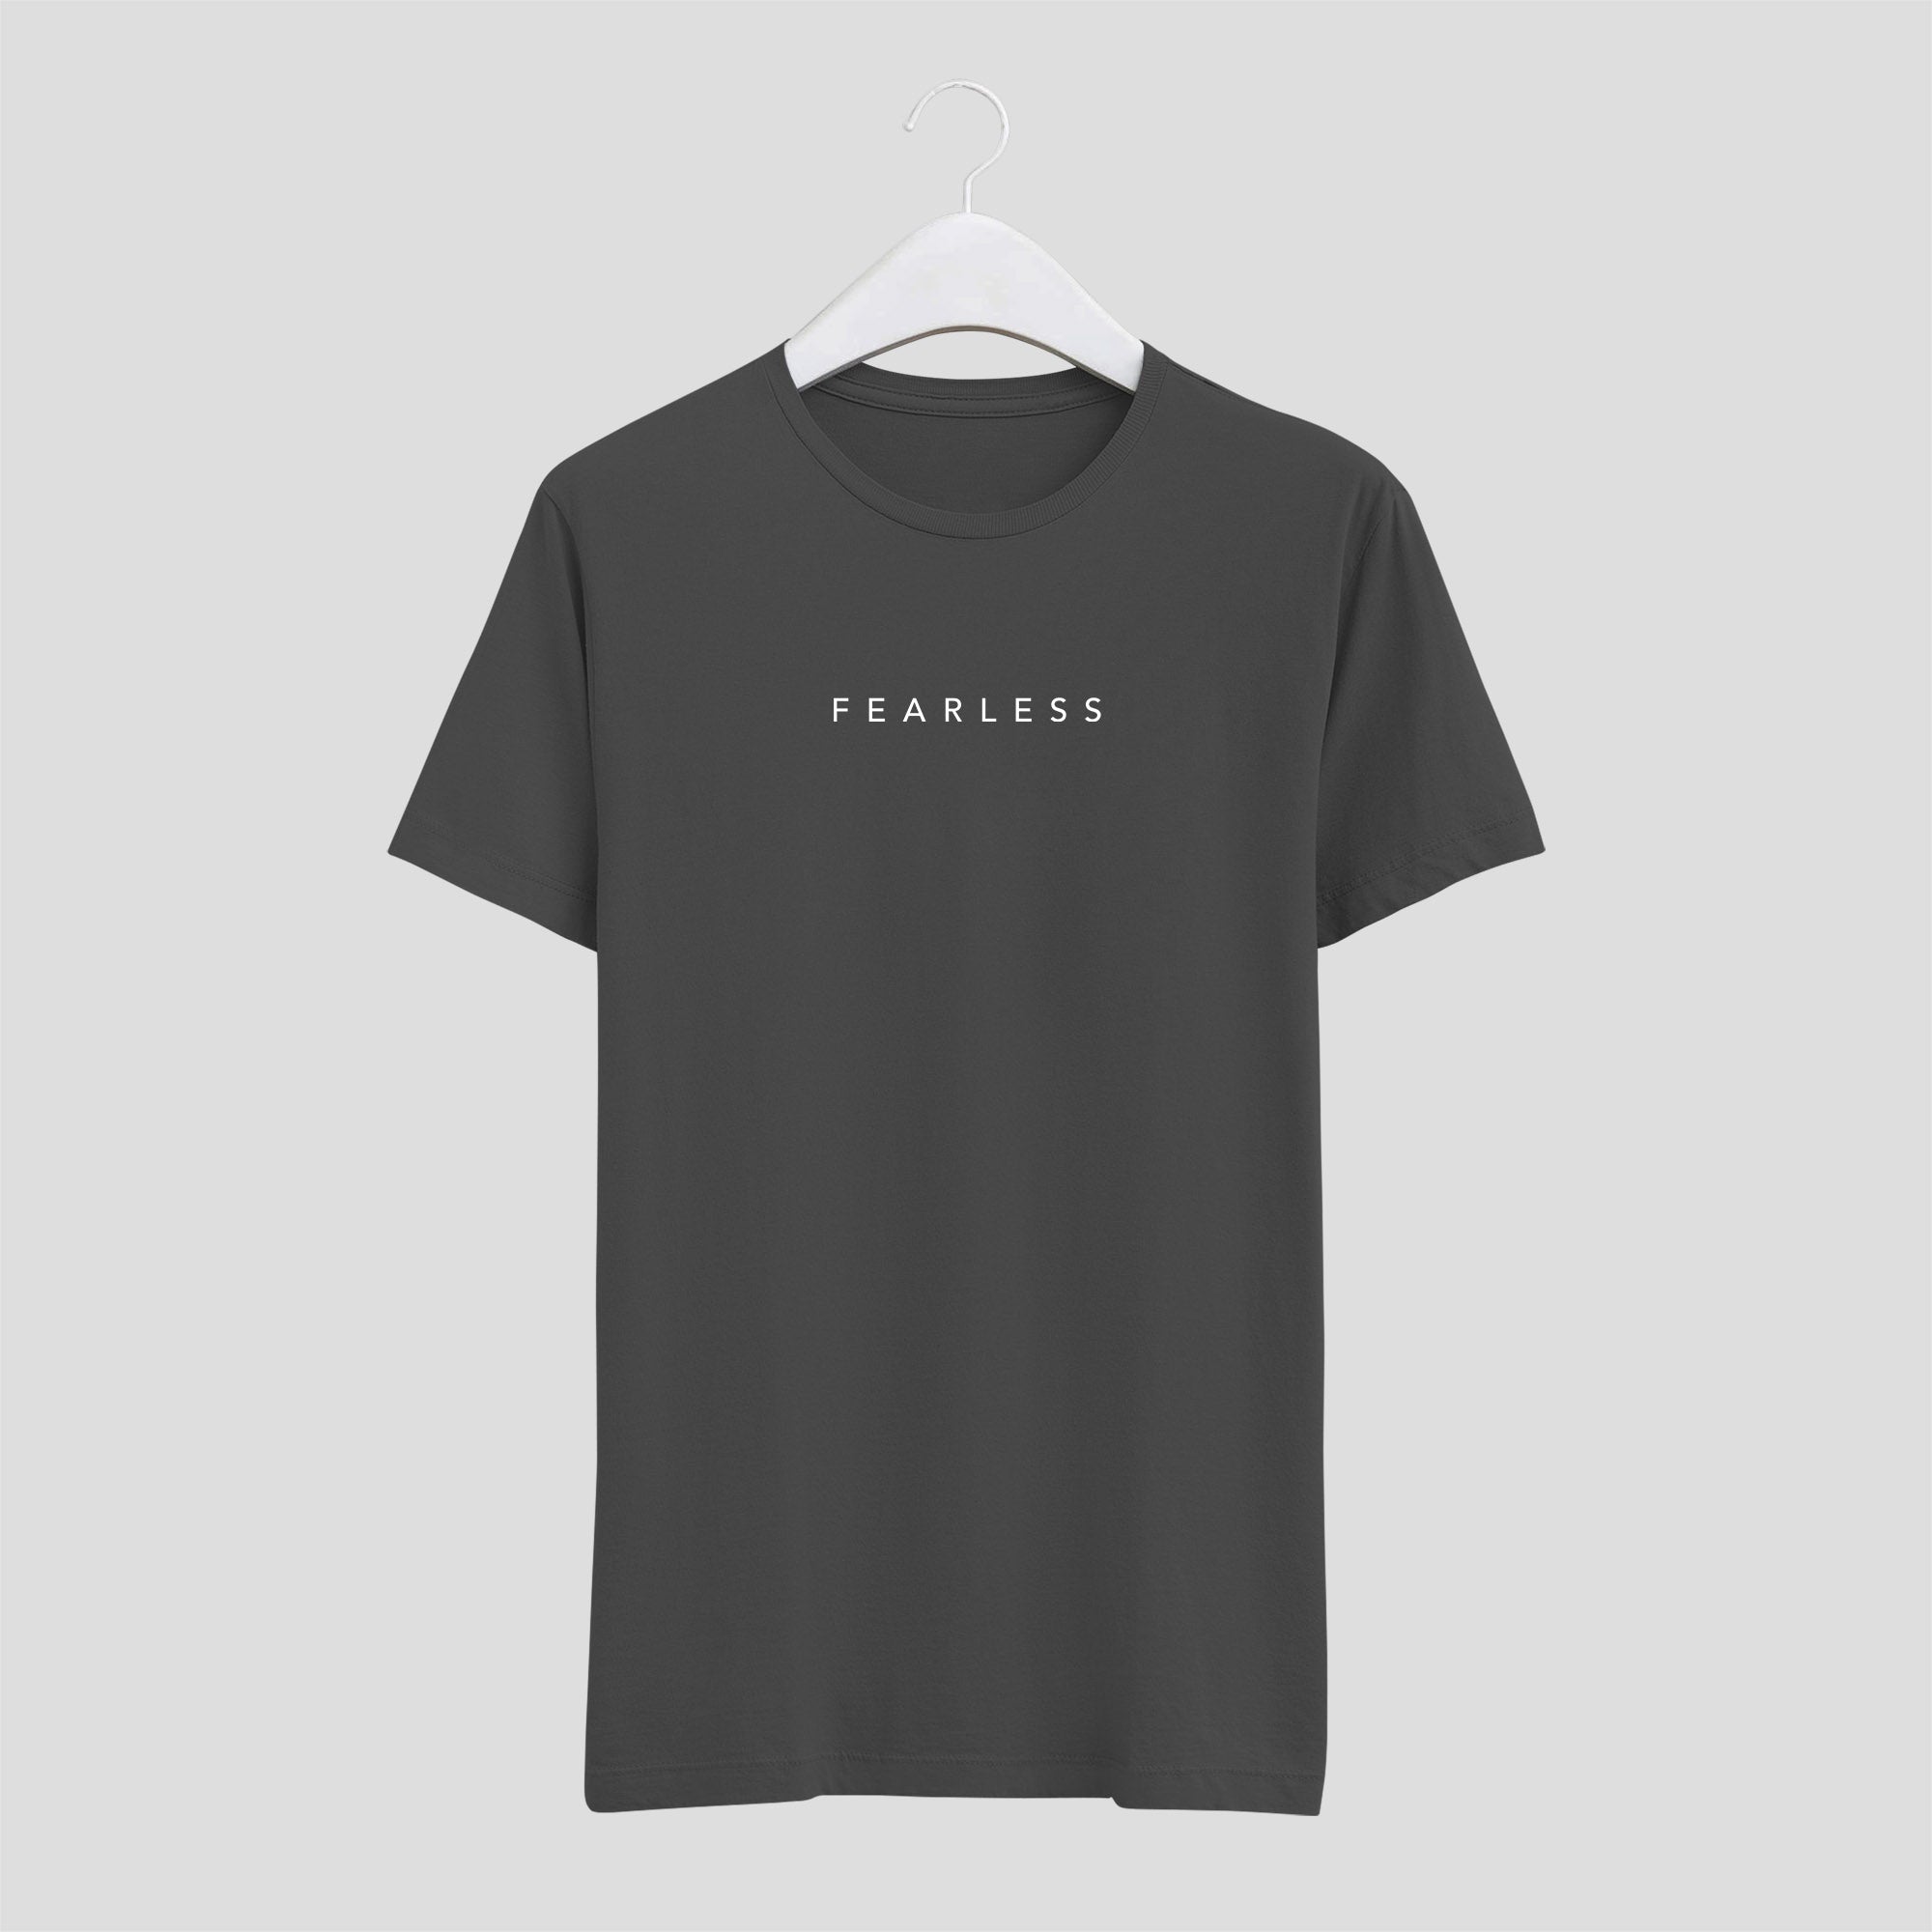 camiseta minimalista fearless sin miedo letras finas hombre gris